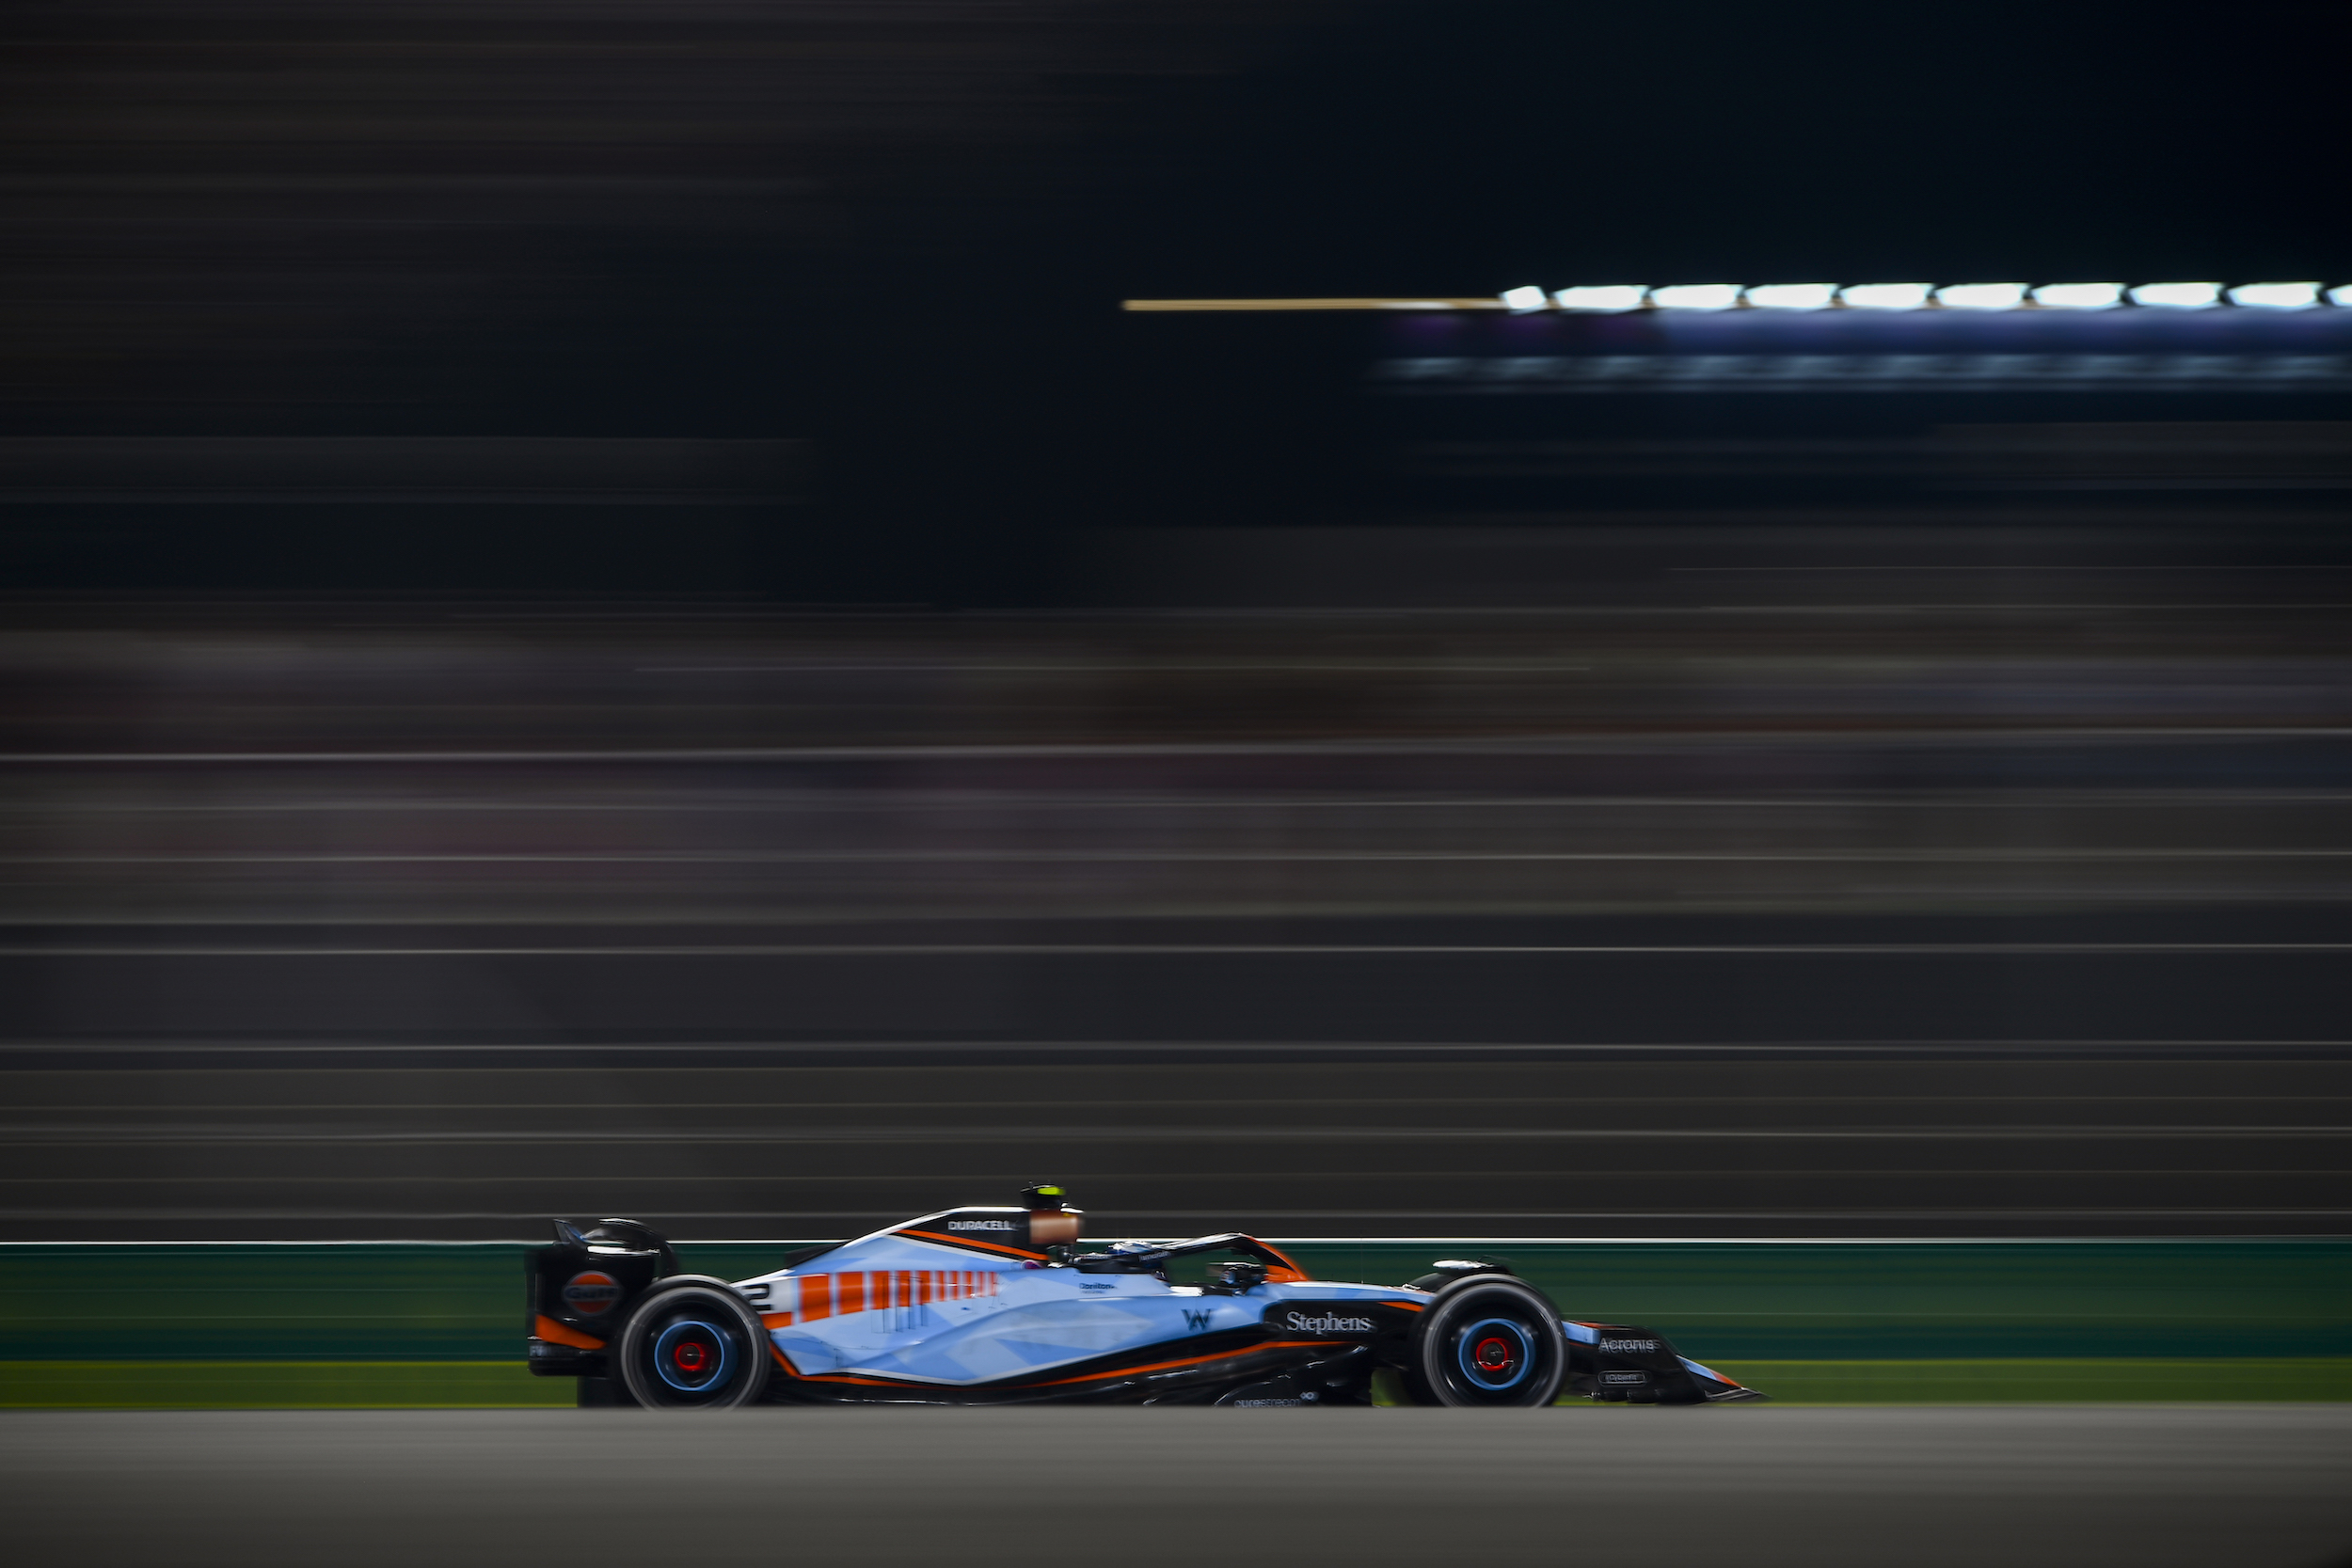 Logan Sargeant drives a Williams car in the Qatar Grand Prix.